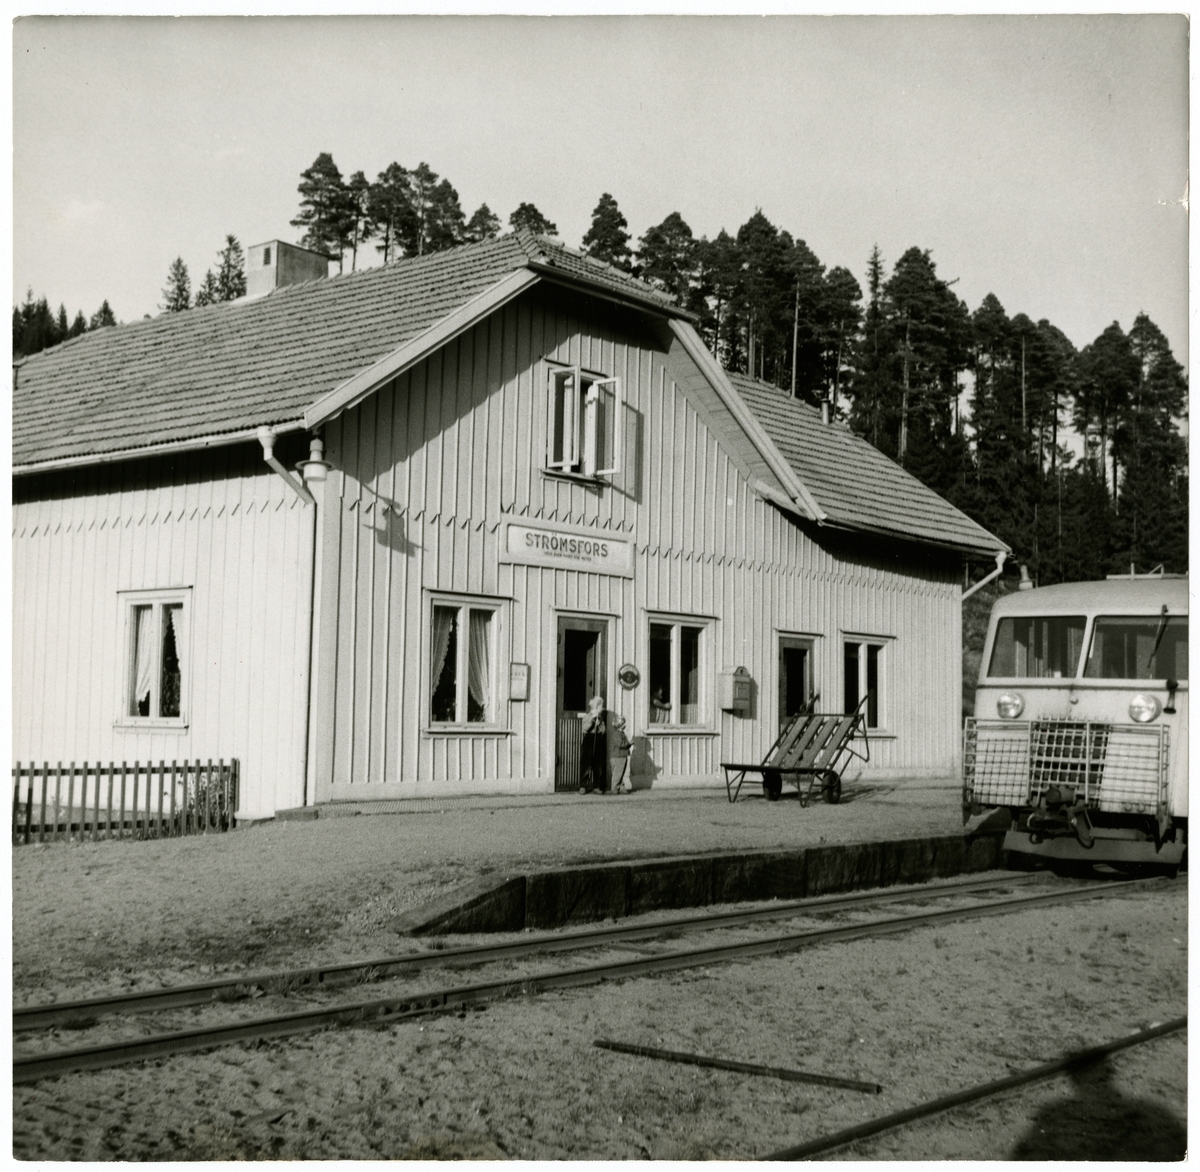 Falkenbergs Järnväg, FJ, Nedlagd av Falkenberg - Limmared. SJ Xo9 Hilding Carlsson Skrotad 1959.